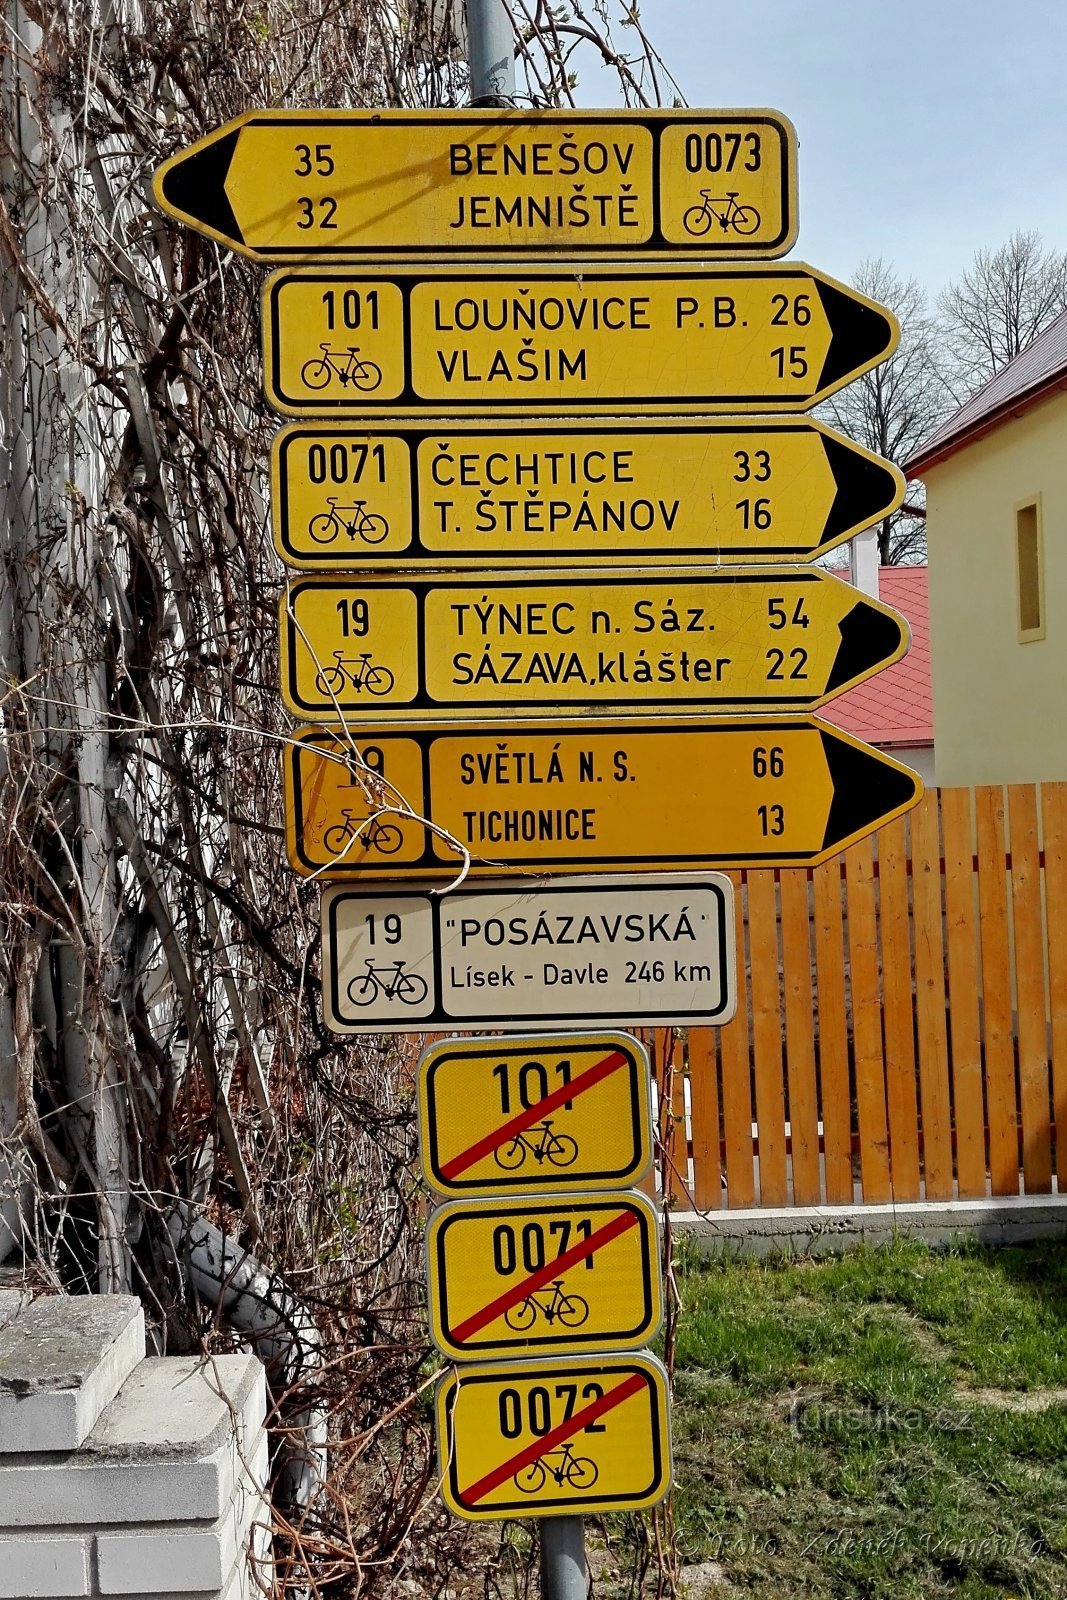 Drogowskaz rowerowy w Czeskim Šternberku.